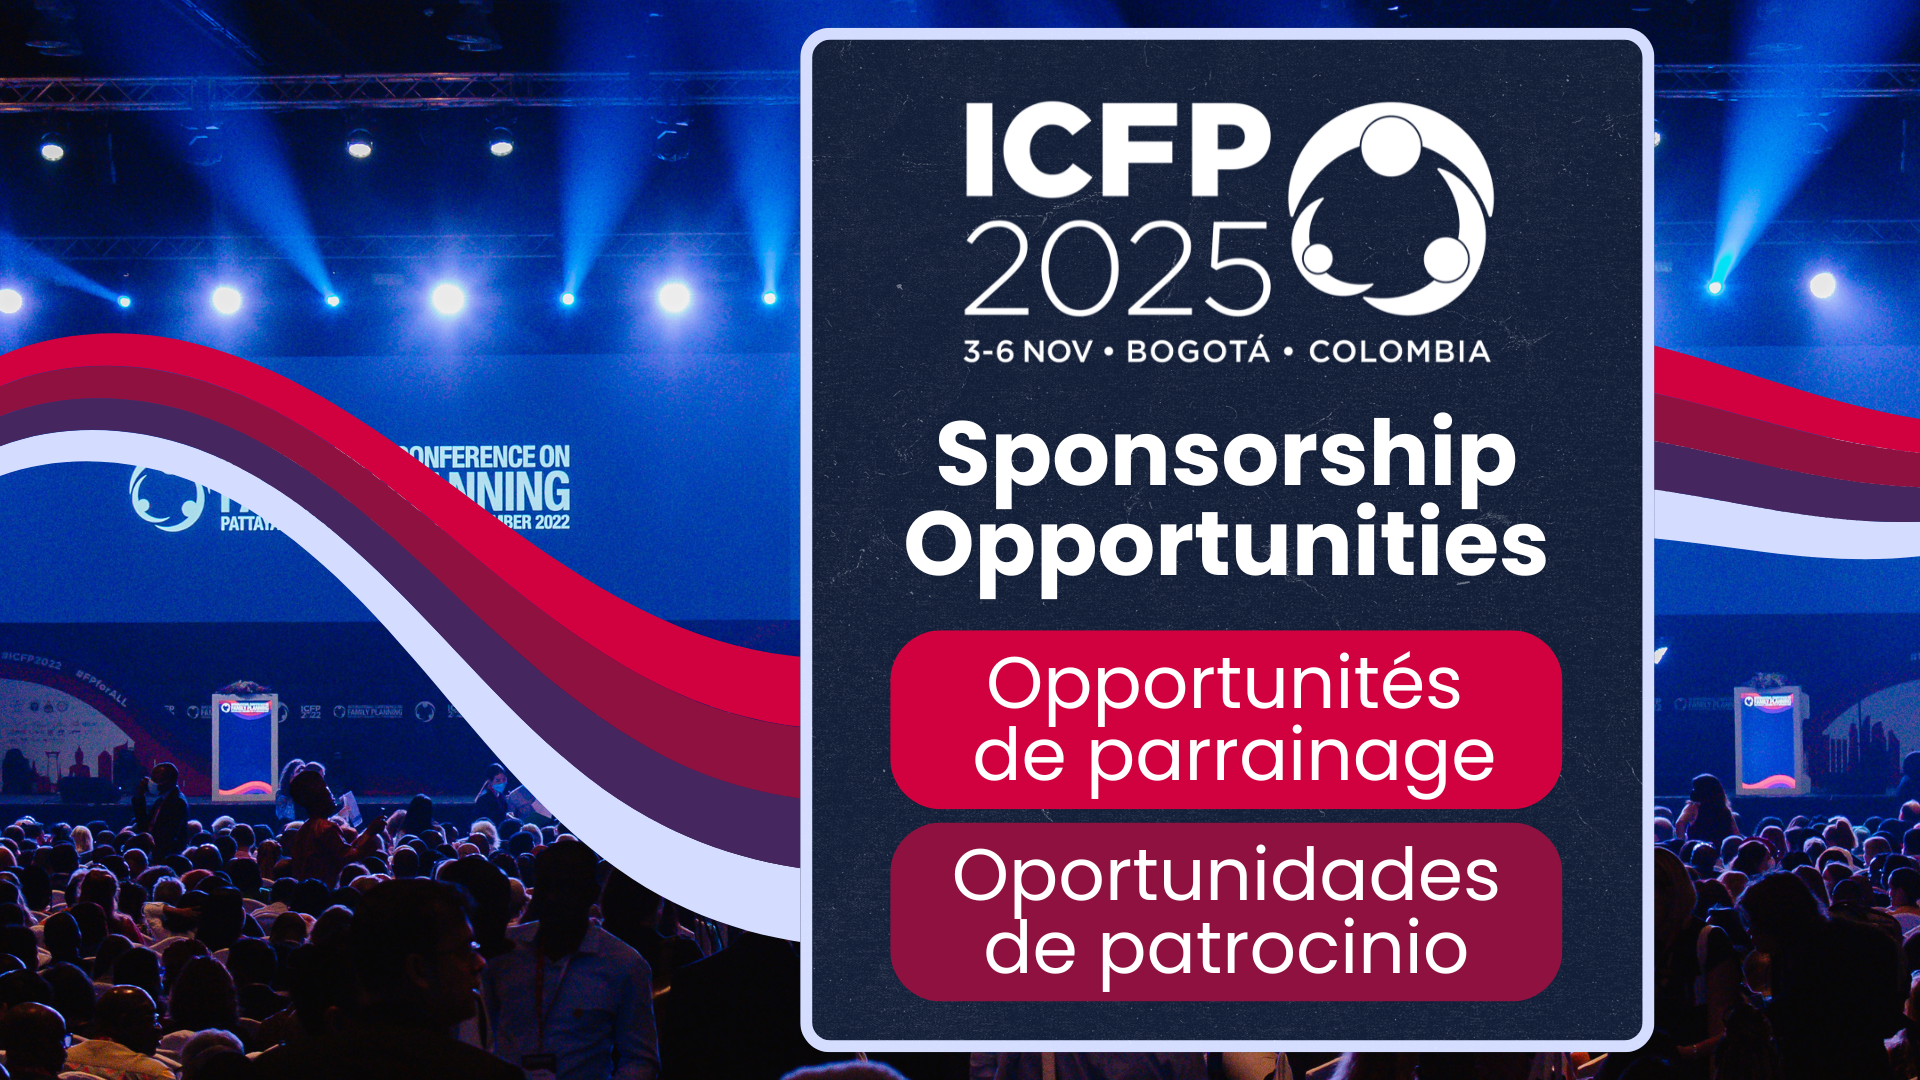 La ICFP 2025 presenta nuevas ventajas y oportunidades de patrocinio